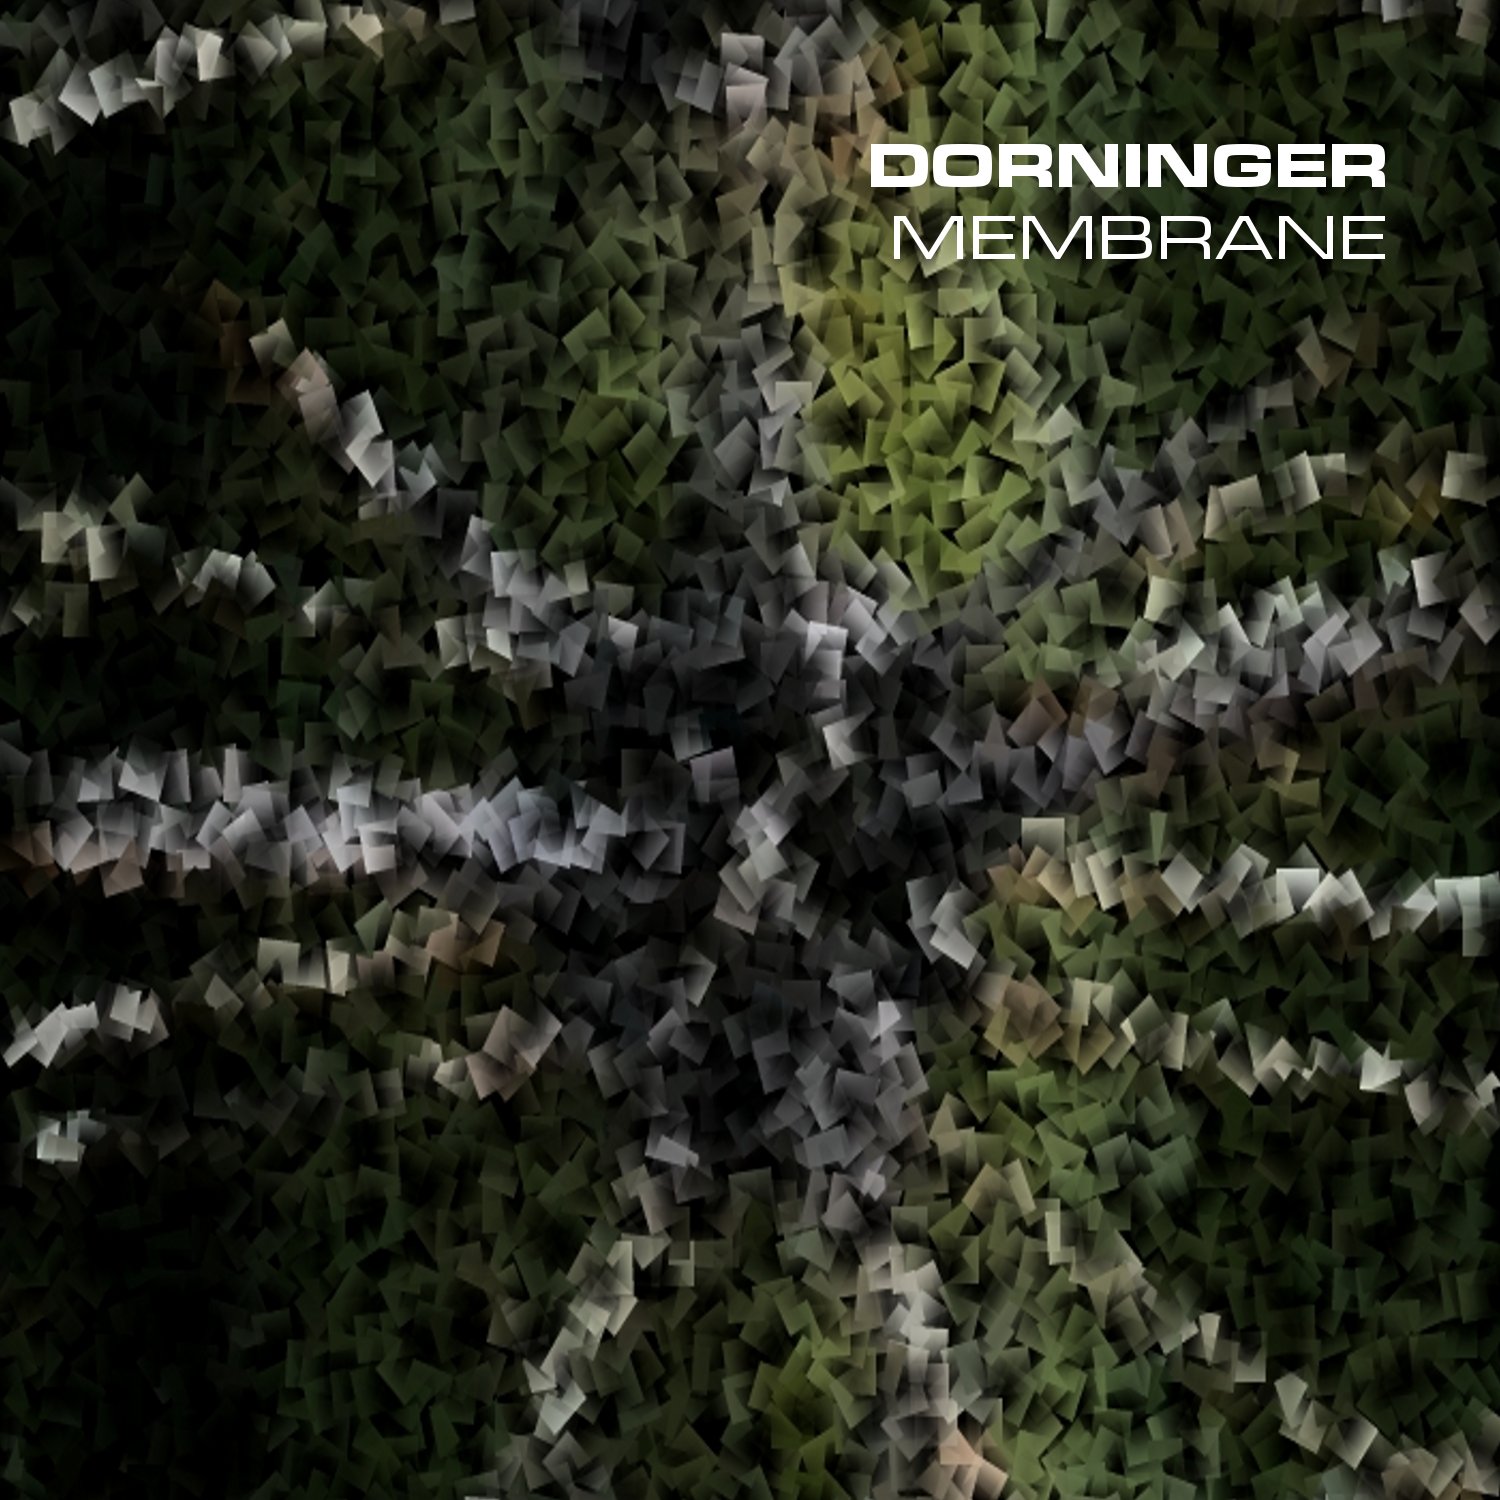 Dorninger "membrane" - 2x 7inch/Digital